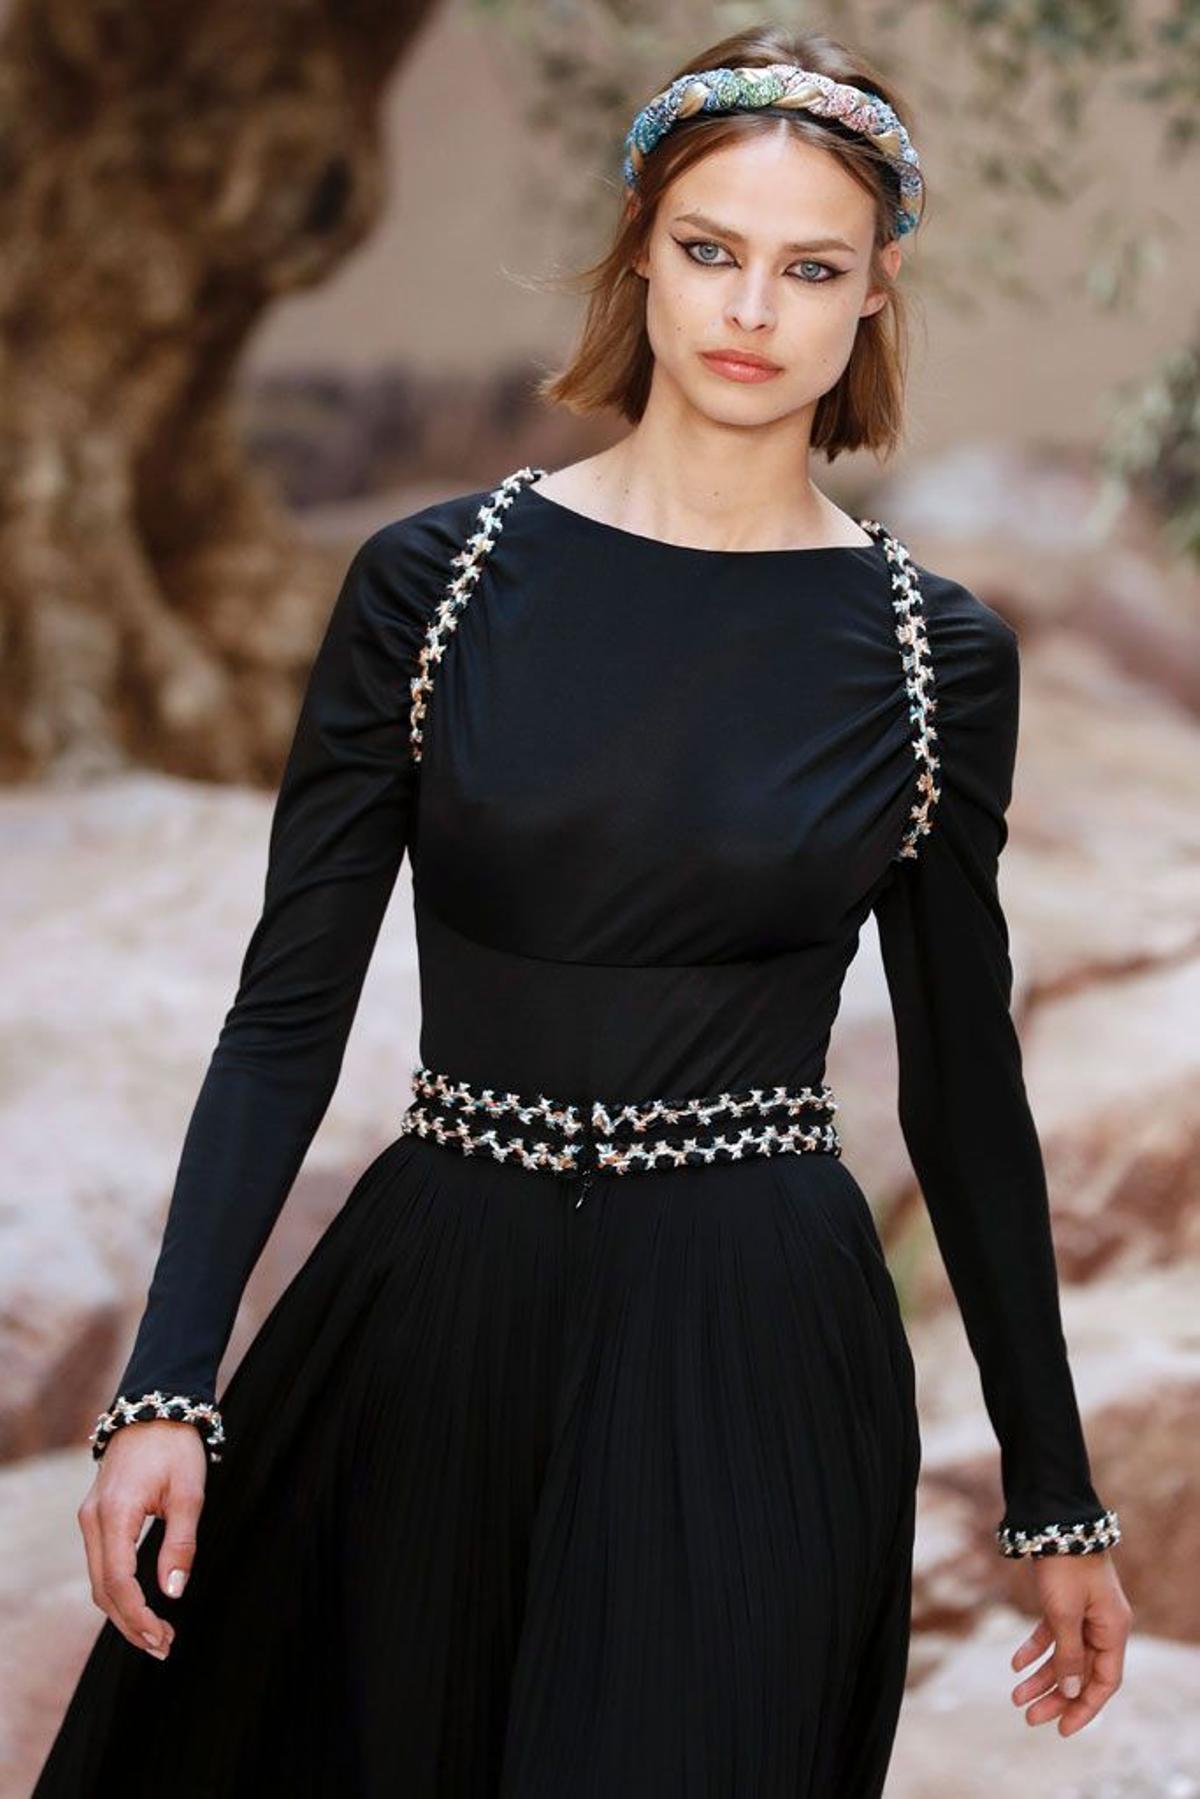 Chanel Colección Crucero 2018: vestido negro